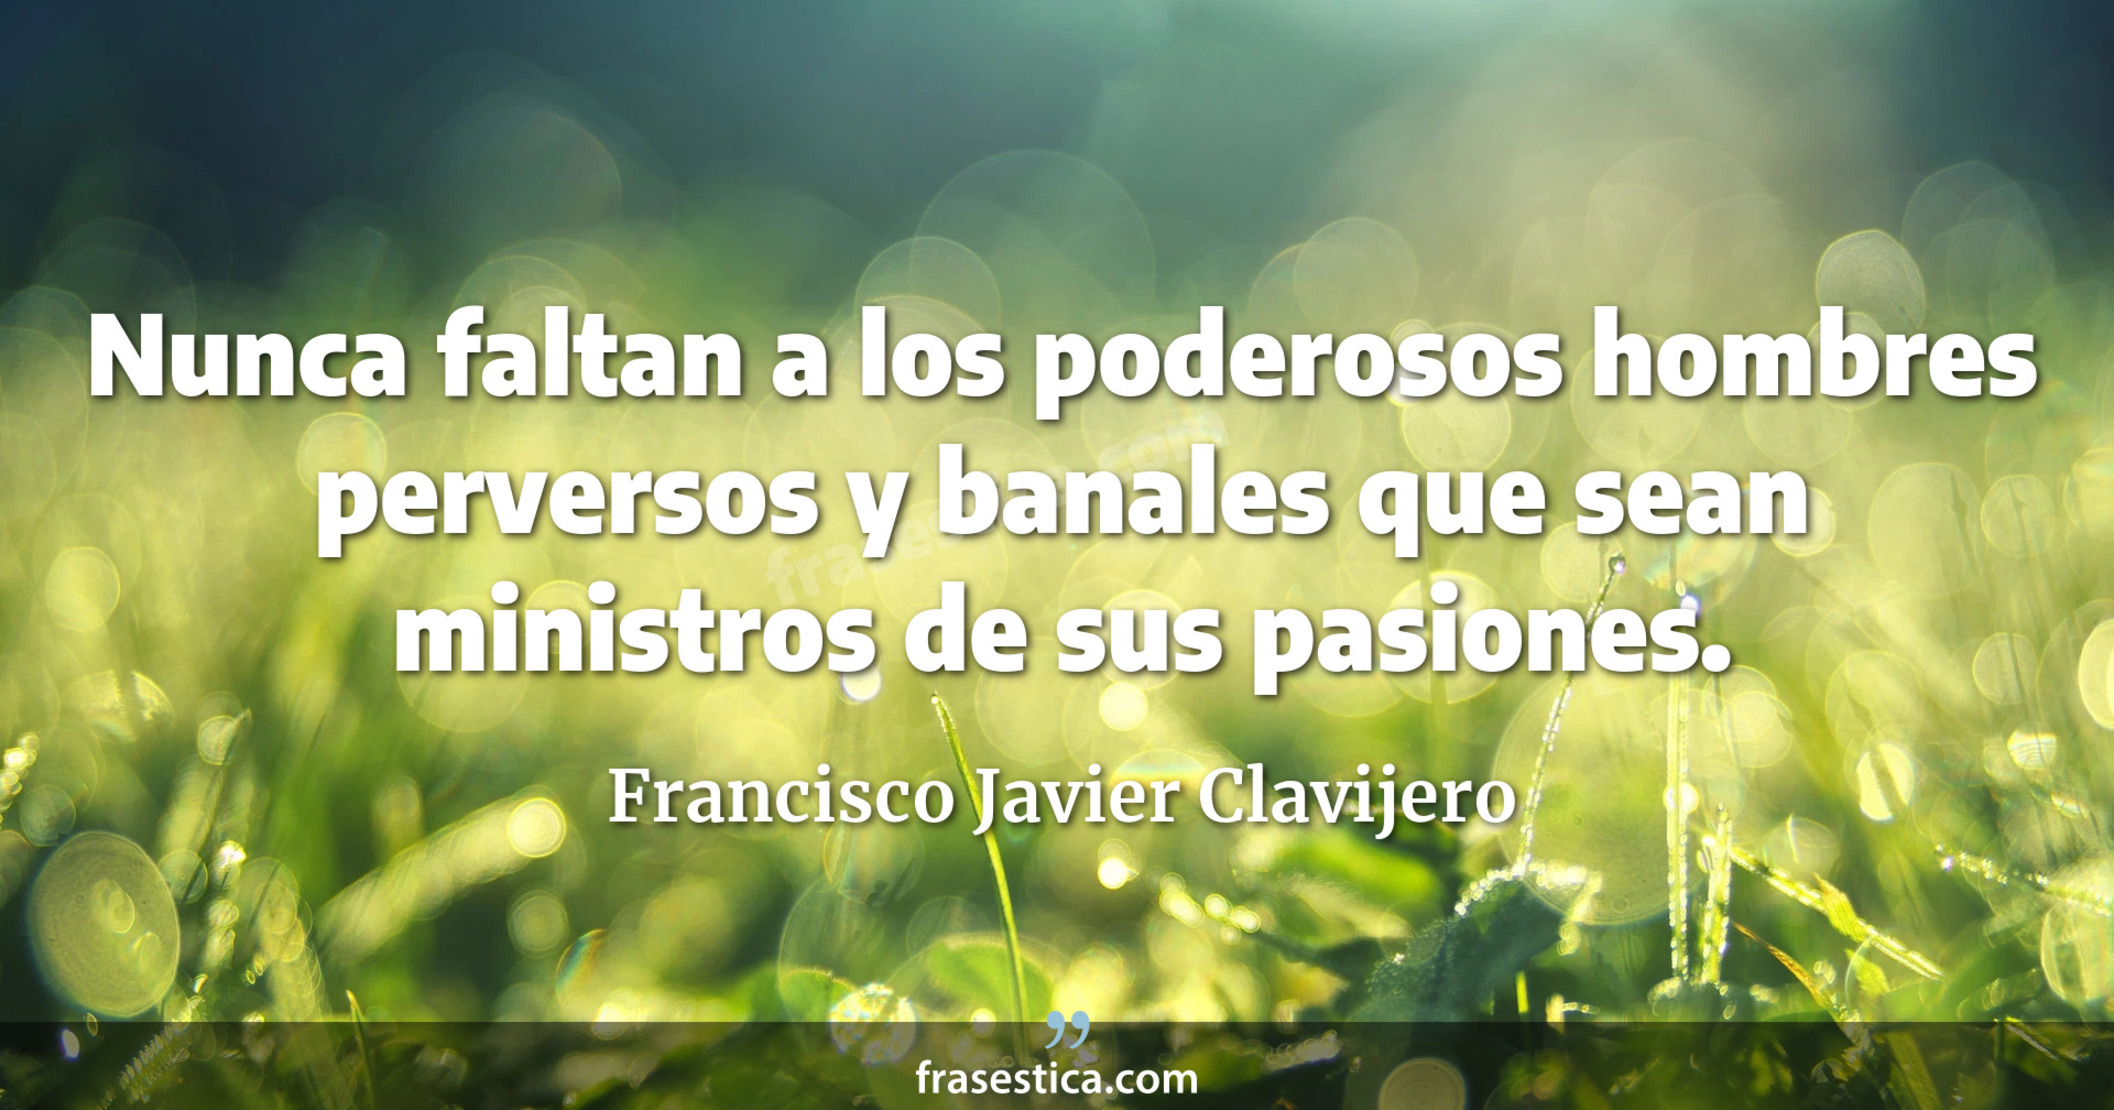 Nunca faltan a los poderosos hombres perversos y banales que sean ministros de sus pasiones. - Francisco Javier Clavijero